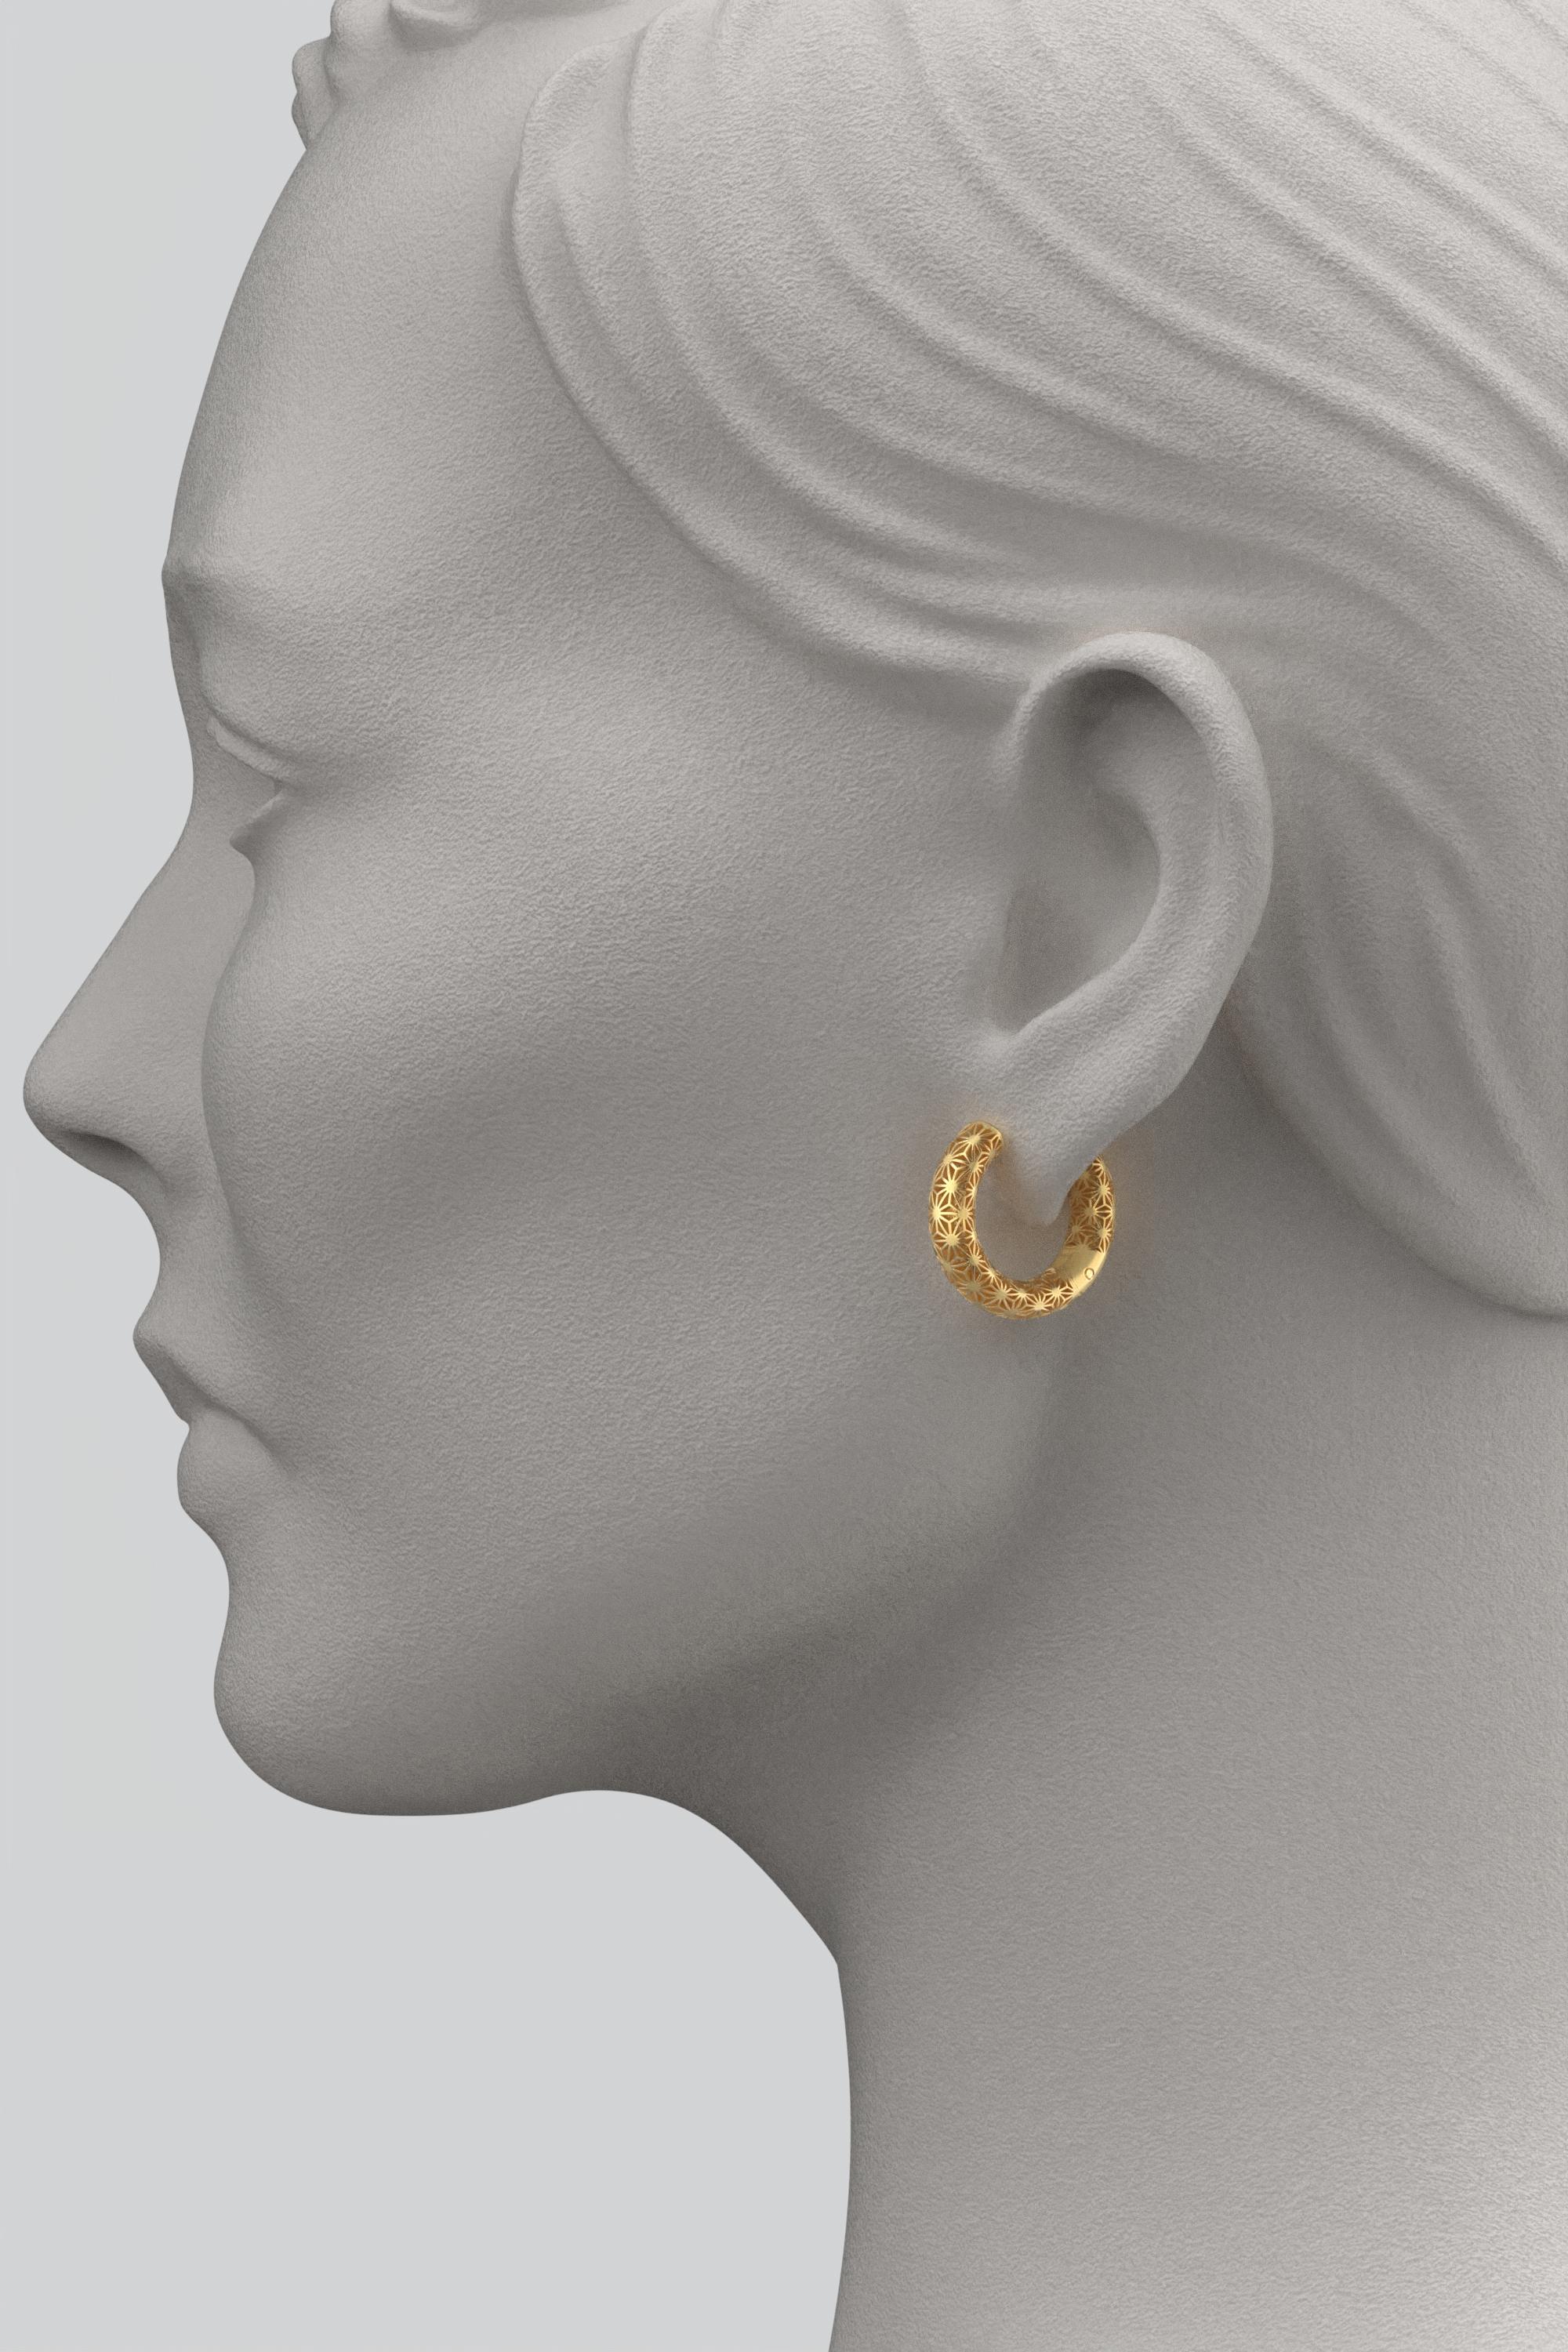  Oltremare Gioielli 14K Italian Gold Hoop Earrings - Sashiko Japanese Pattern  For Sale 2